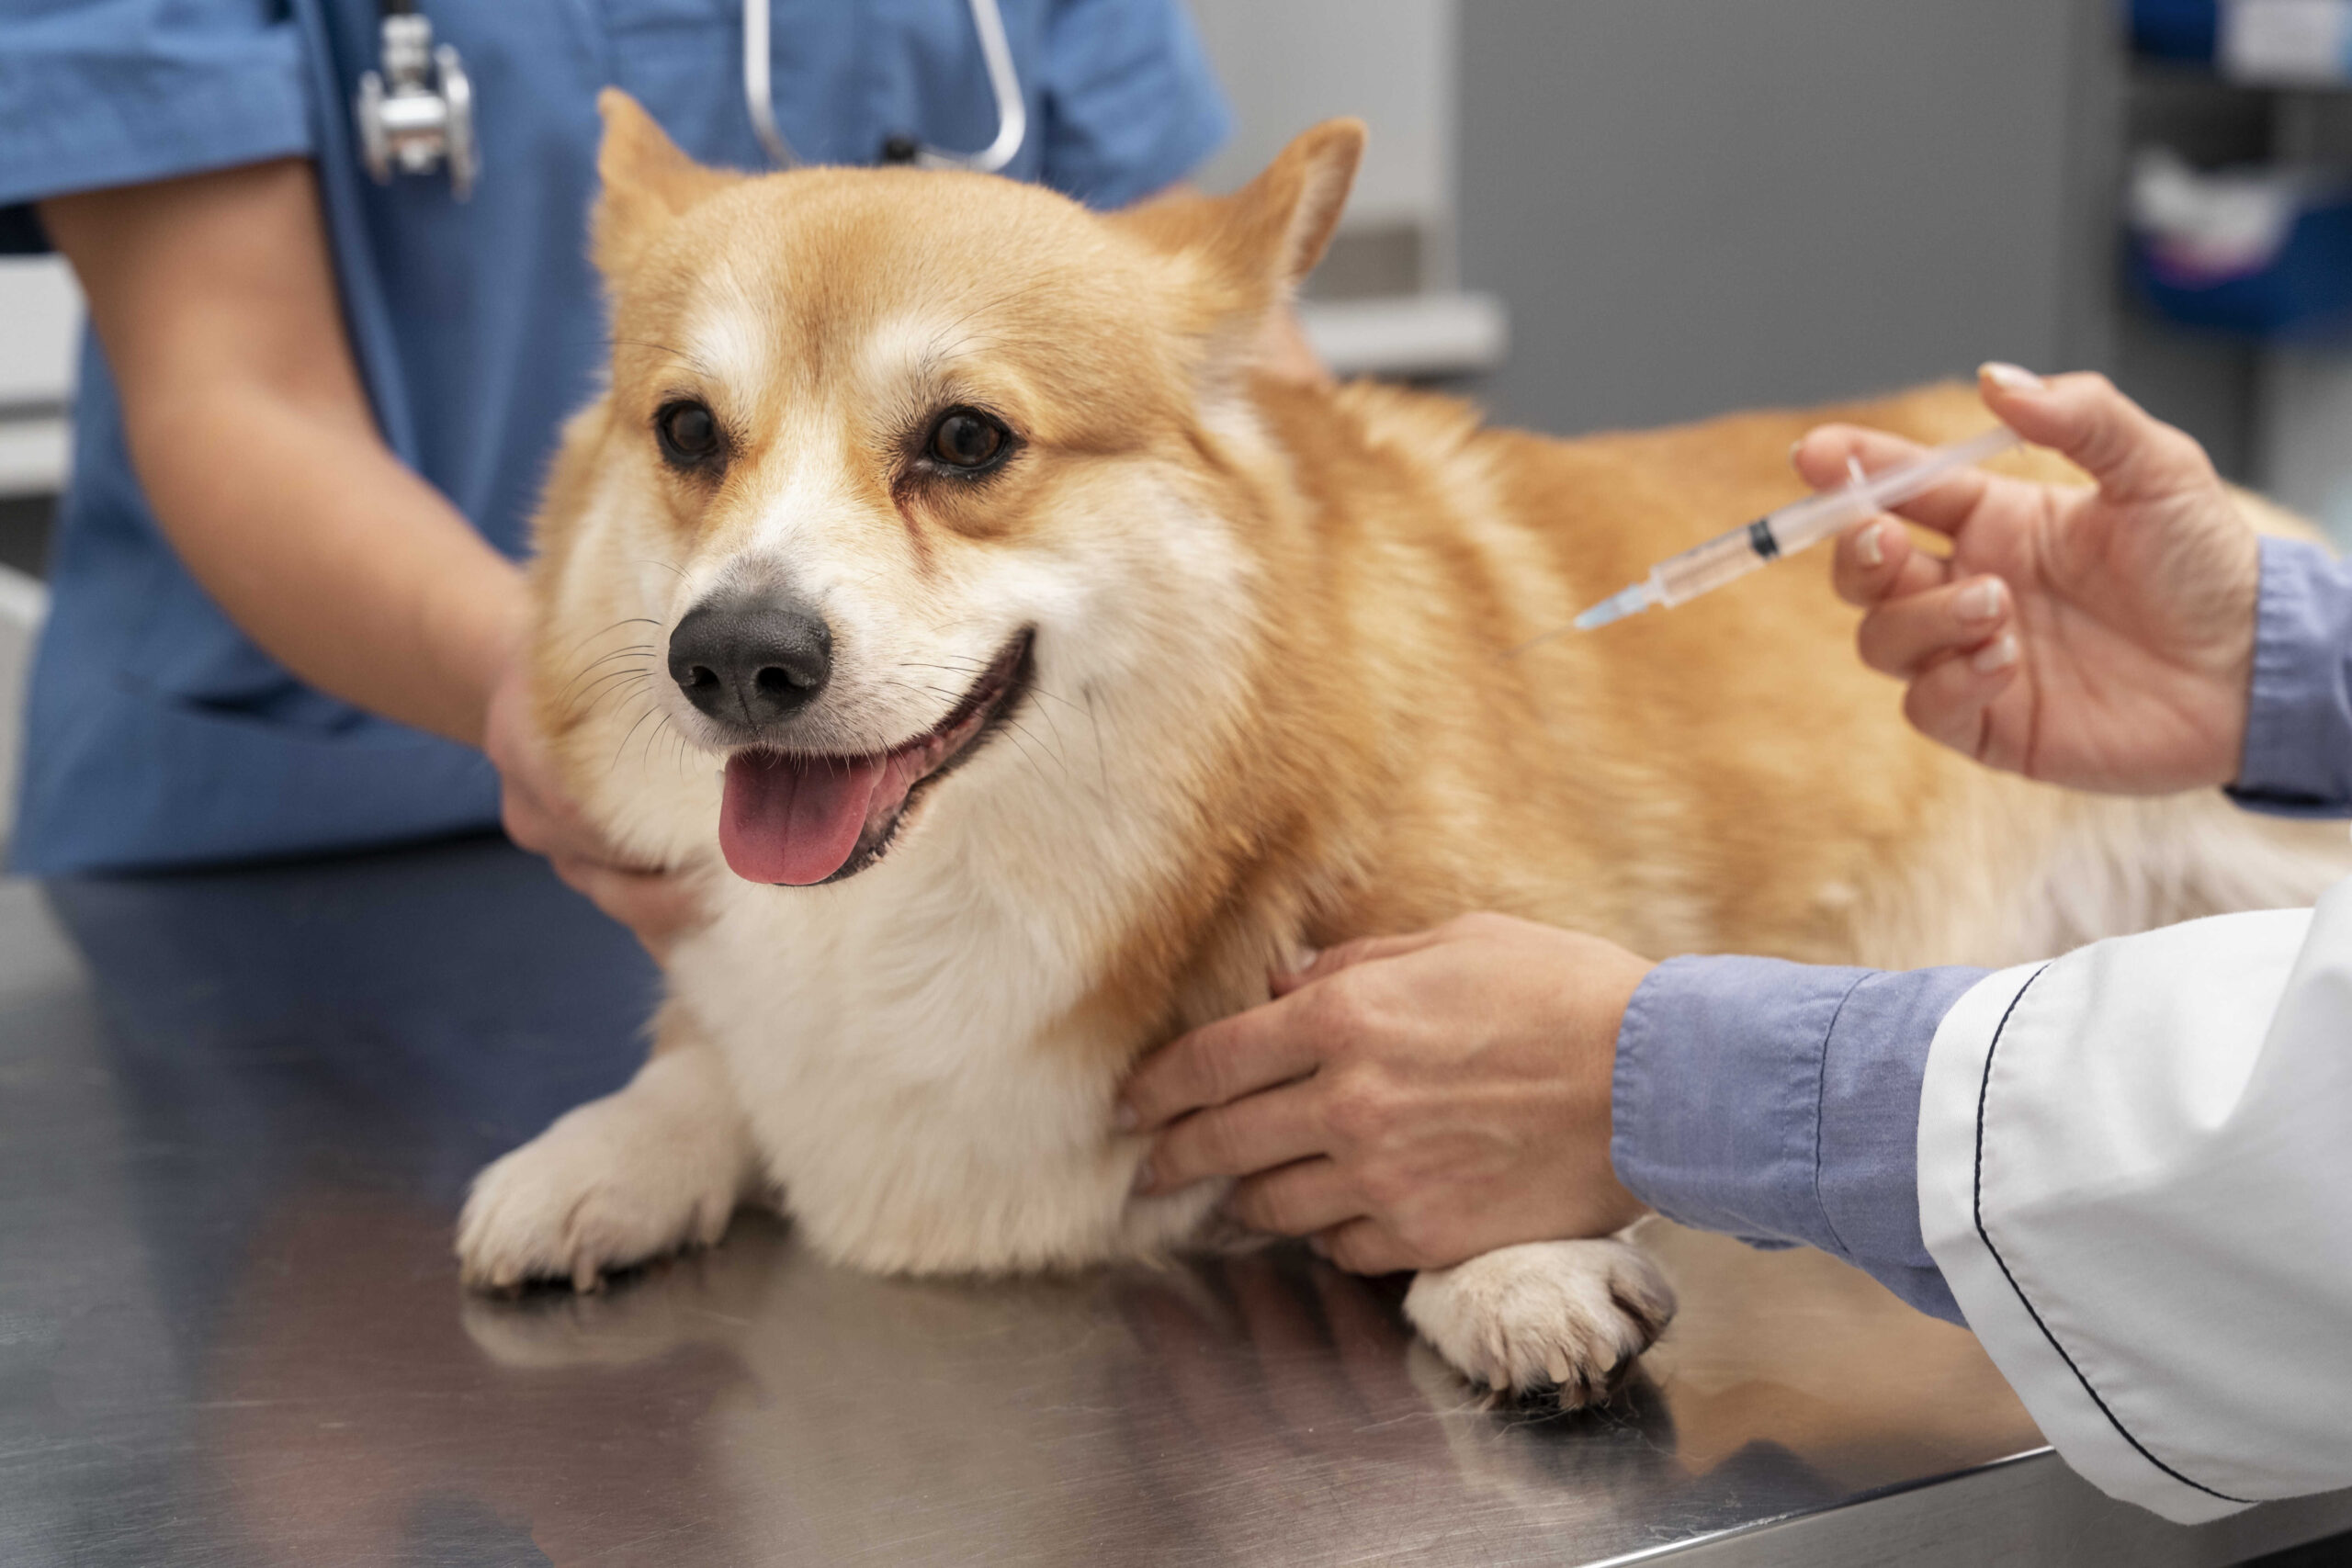 vacunas-perros